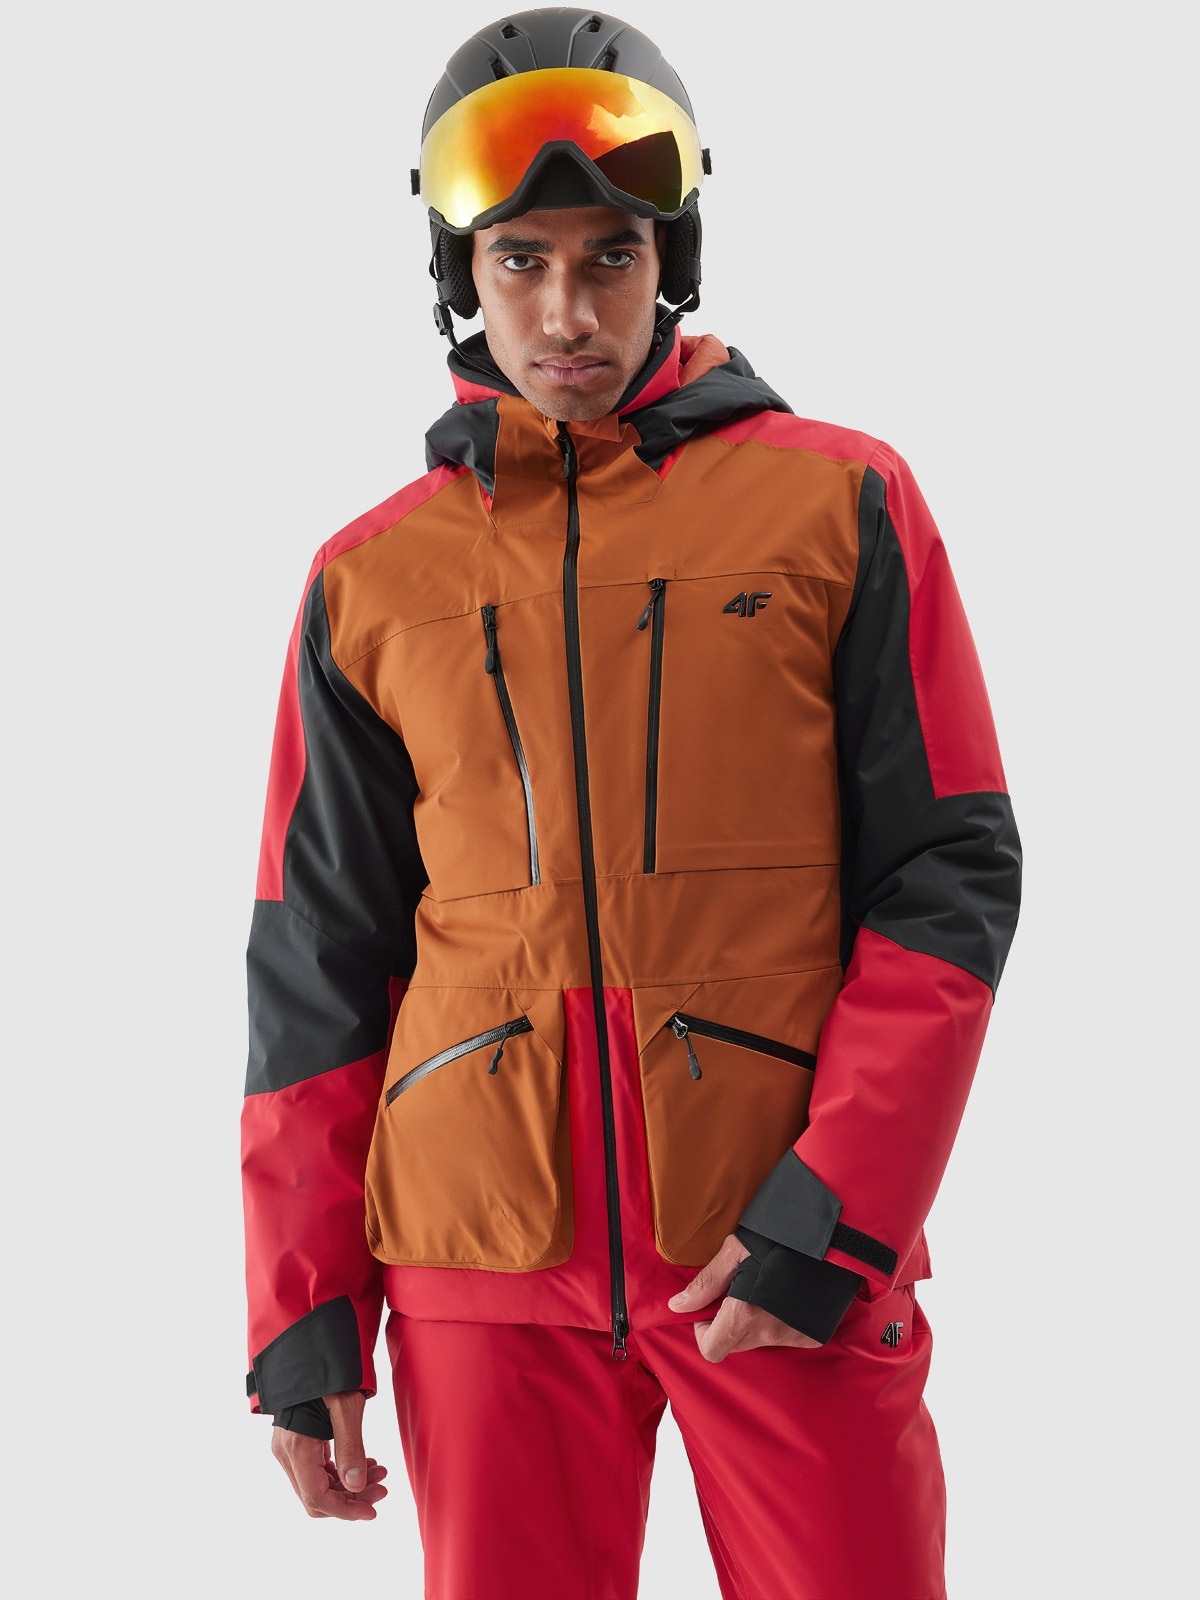 Pánská lyžařská bunda 4FPro membrána Dermizax 20000 - červená